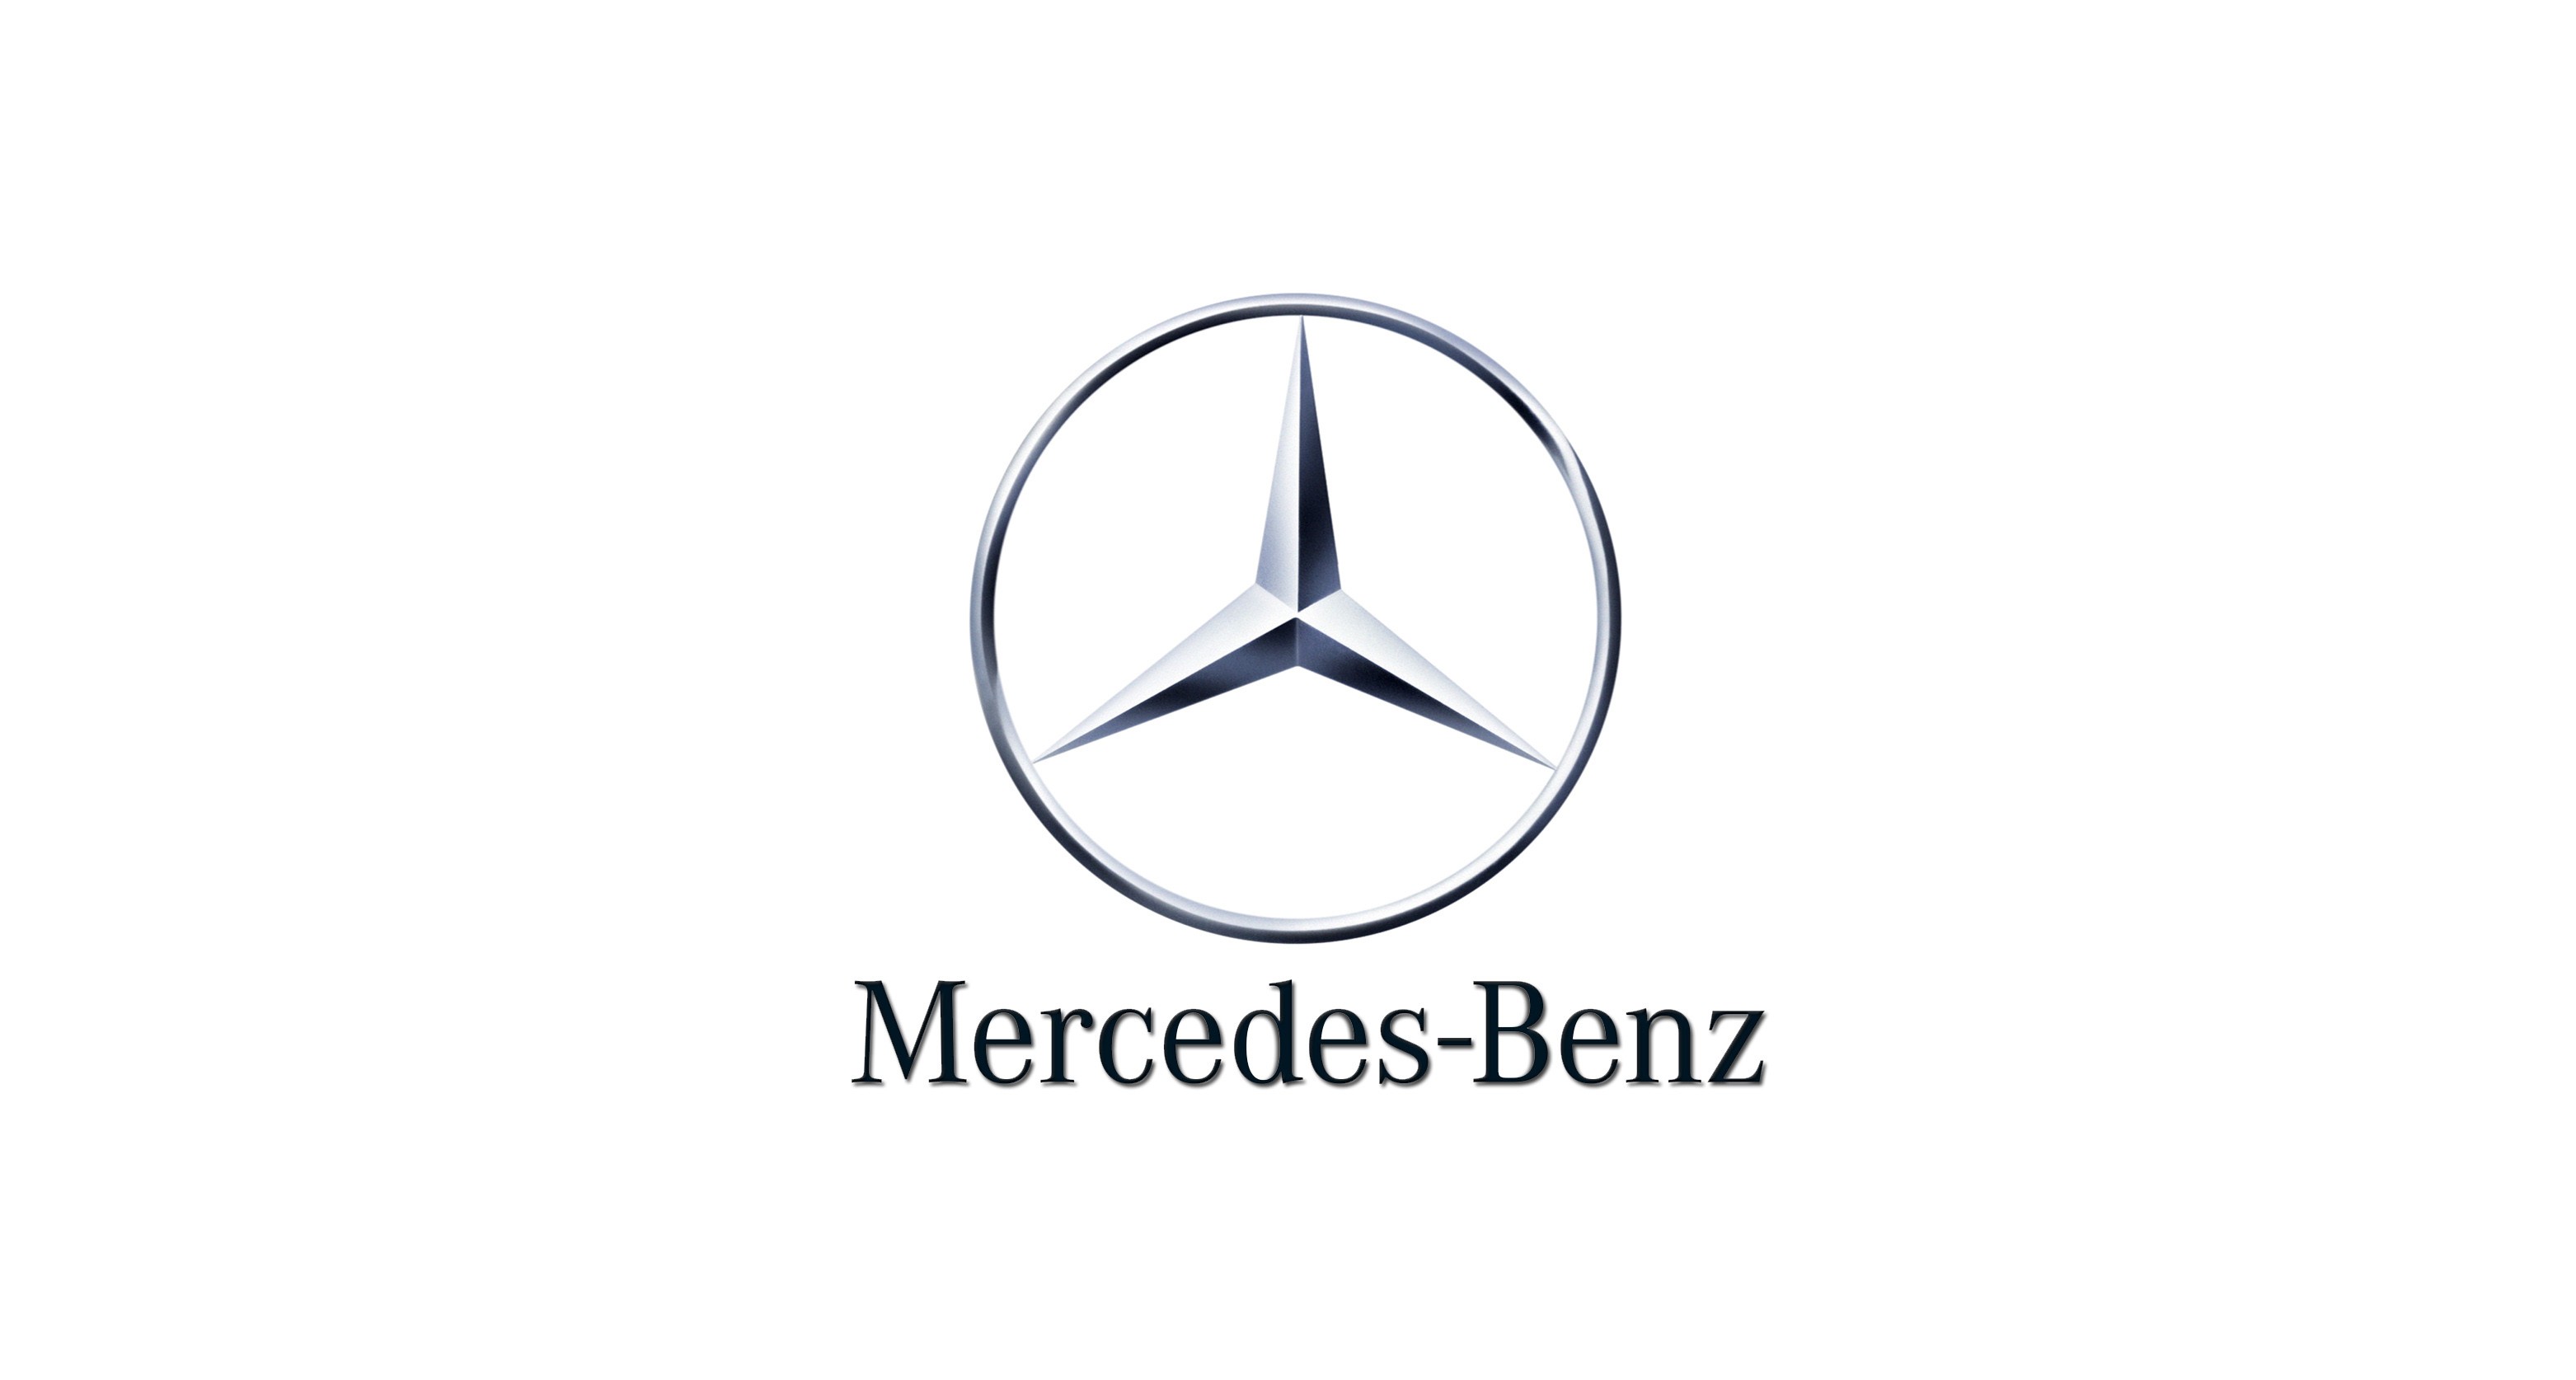 Mercedes Benz Wallpapers - Top 35 Best Mercedes Benz Backgrounds Download